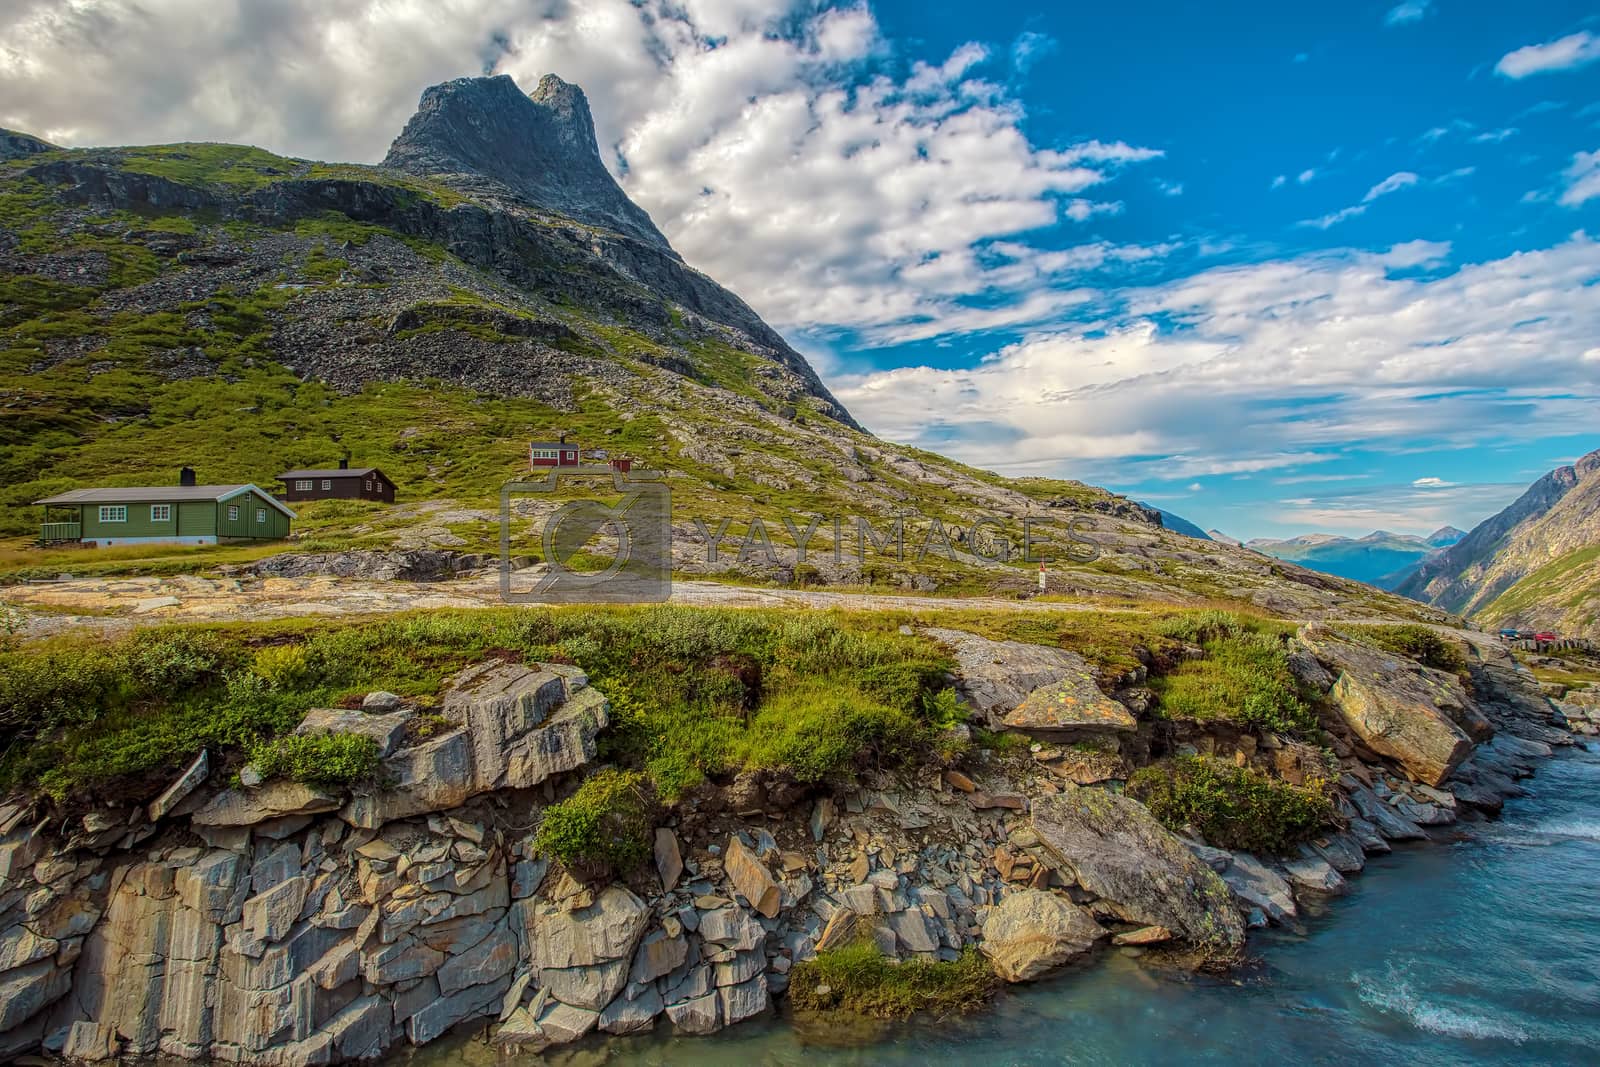 Royalty free image of Trollstigen in Norway by kjorgen